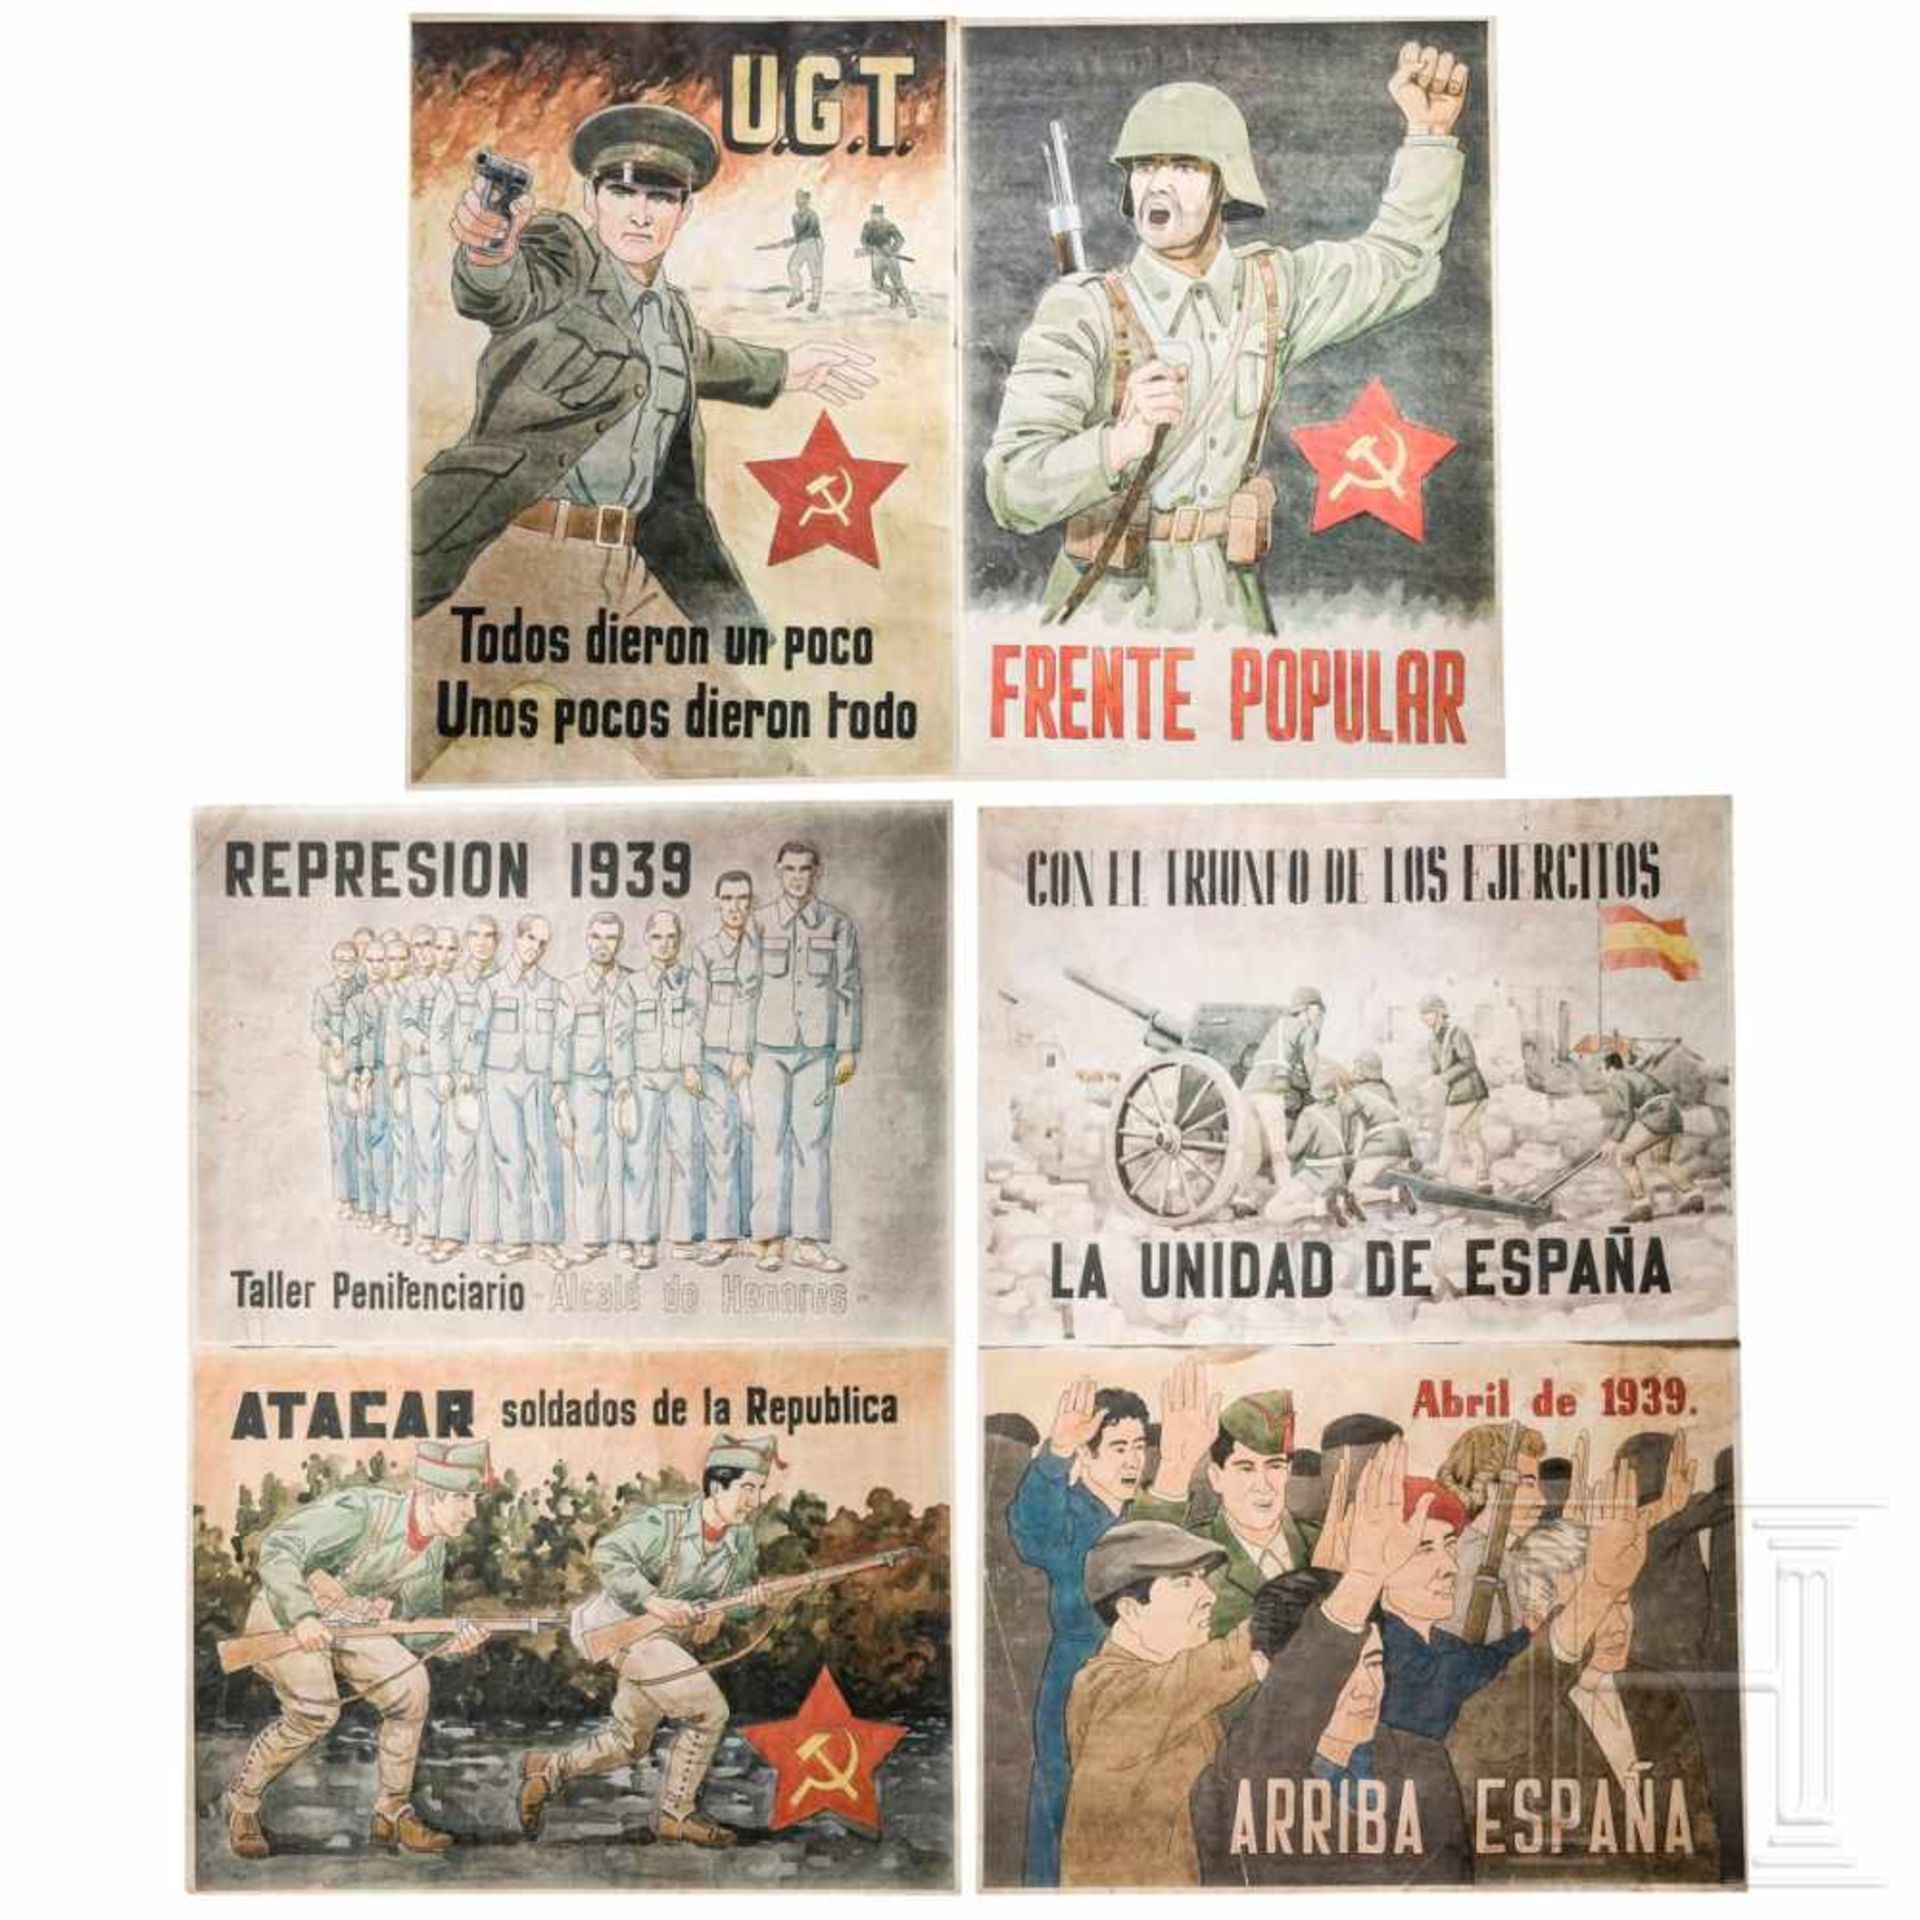 Sechs Plakate zum Spanischen Bürgerkrieg, 1936-39